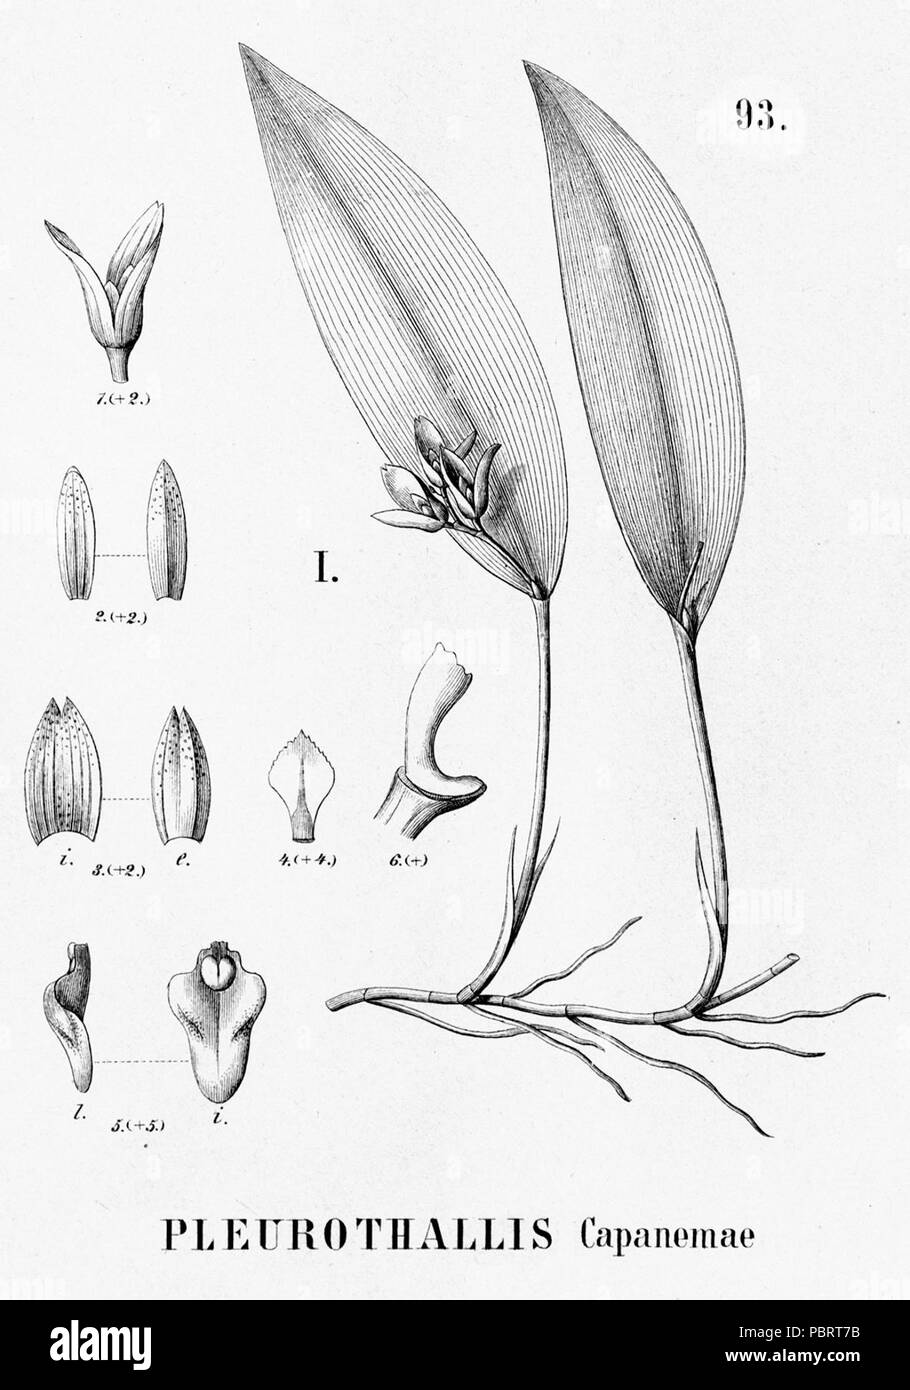 Acianthera capanemae (as Pleurothallis capanemae) - cutout from Flora Brasiliensis 3-4-93 fig I. Stock Photo